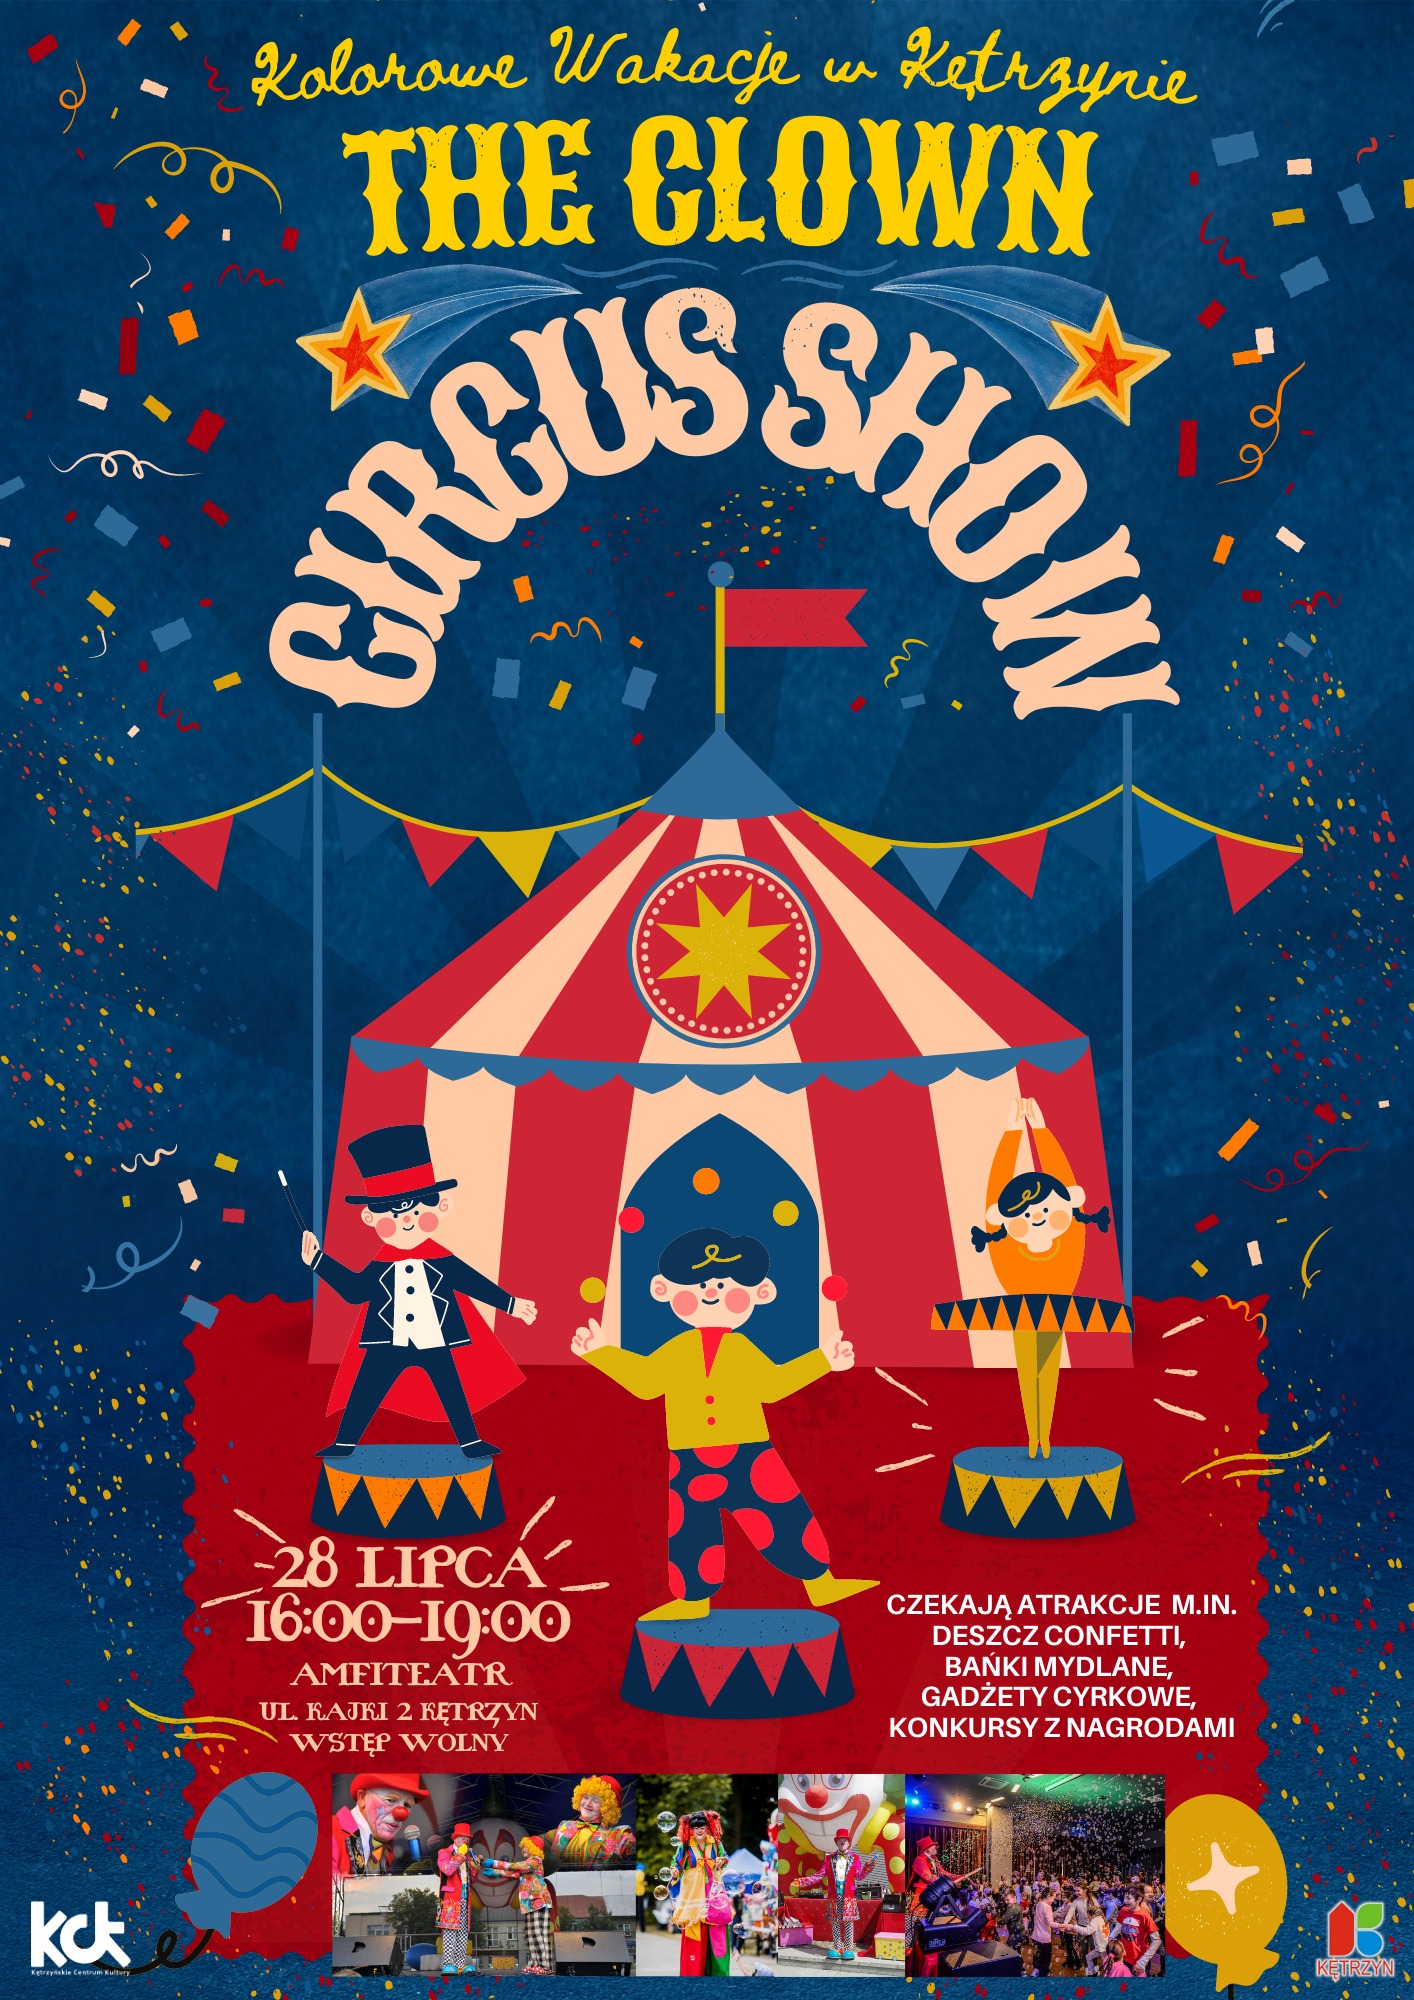 28 lipca na widowisko cyrkowe The Clown Circus Show. The Clown Circus Show - KĘTRZYN 28 lipca (piątek) godz. 16:00-19:00 Amfiteatr, ul. Kajki 2, Kętrzyn Wstęp wolny